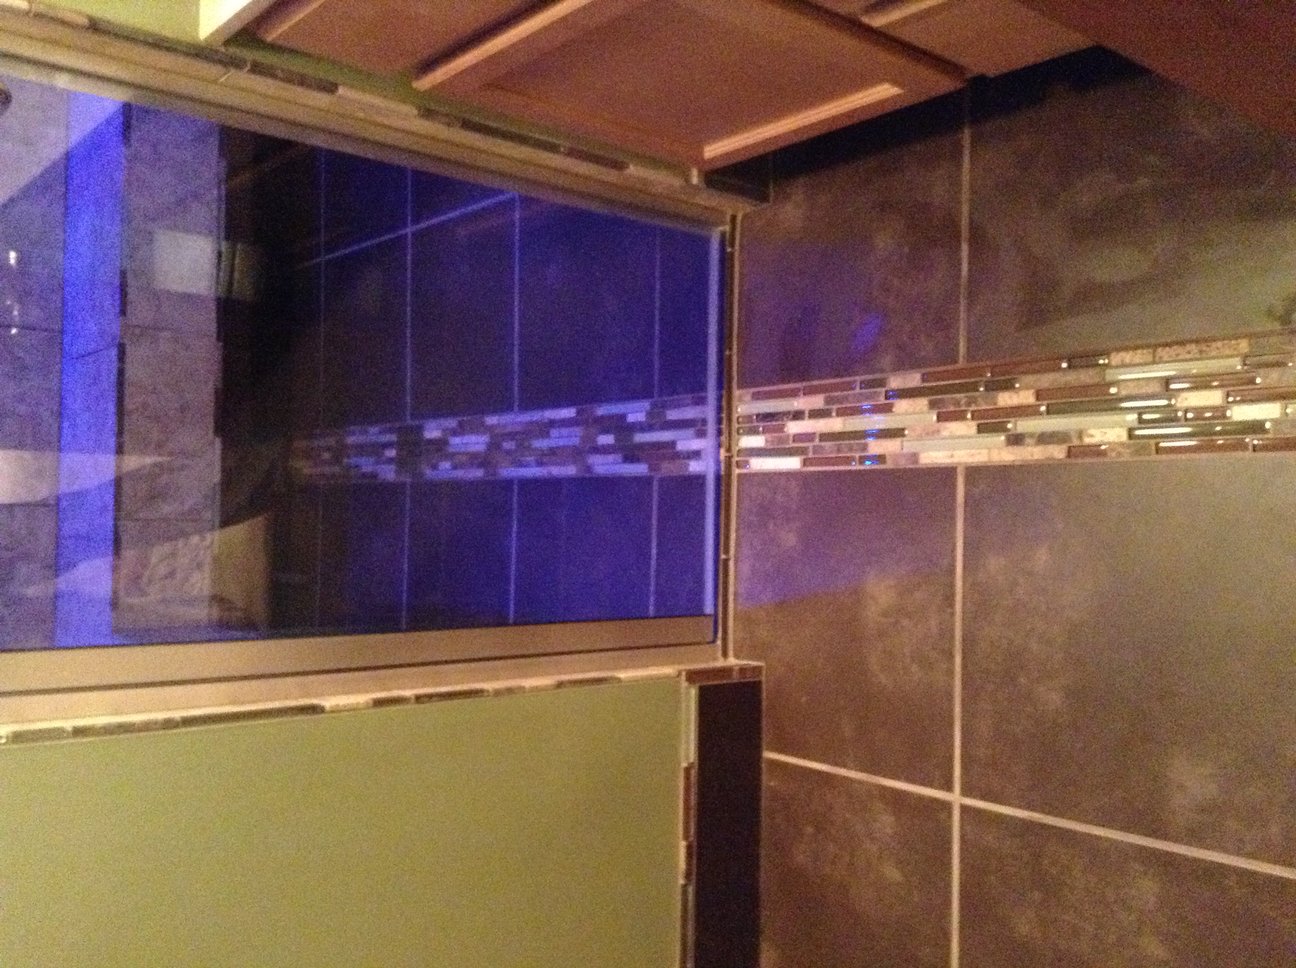 showering plumbing remodeling